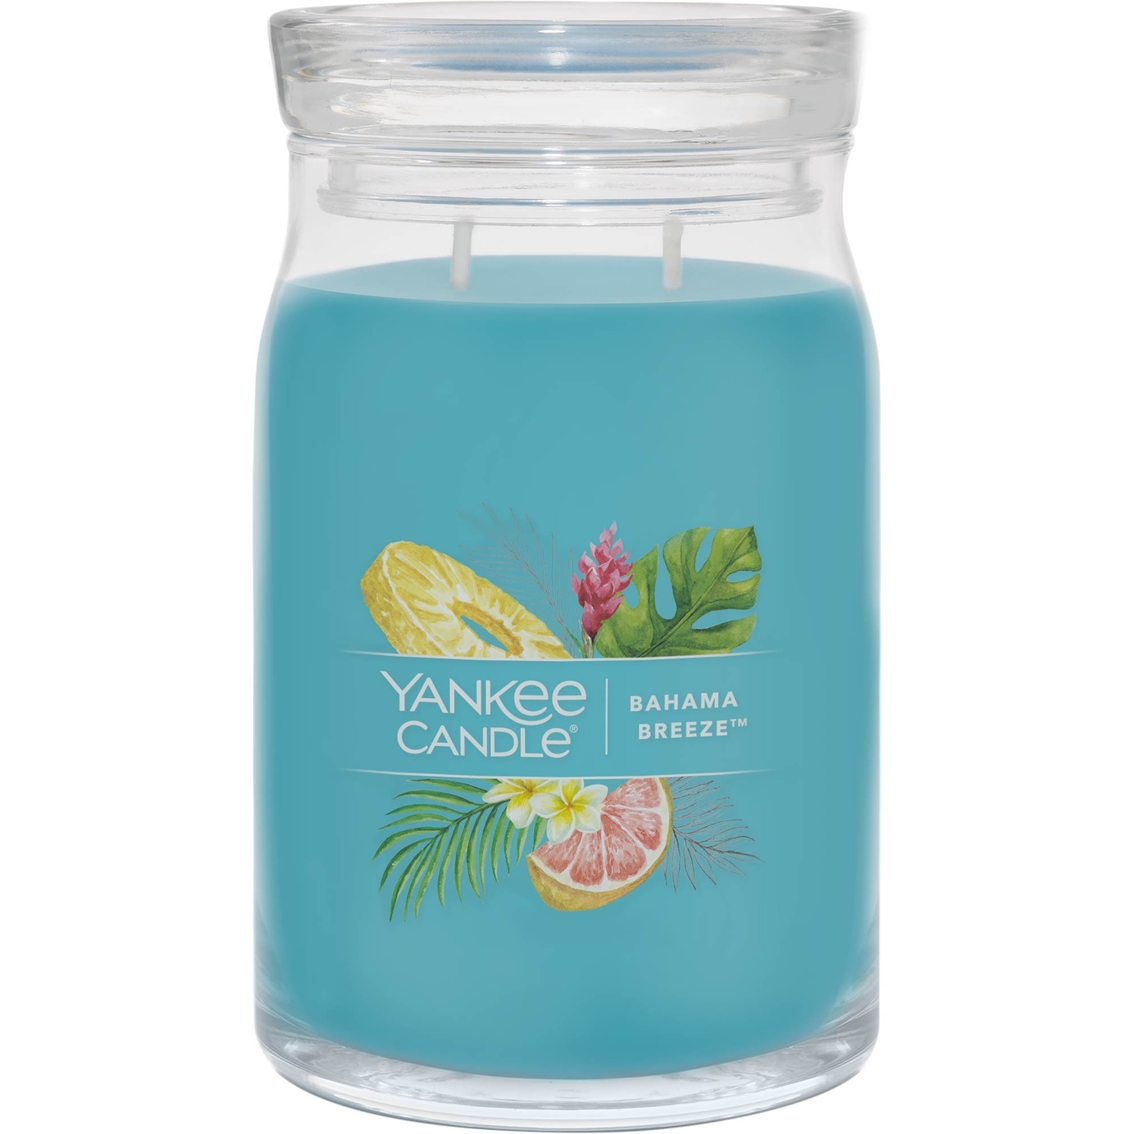 Yankee Candle Bahama Breeze Signature Large Jar Candle